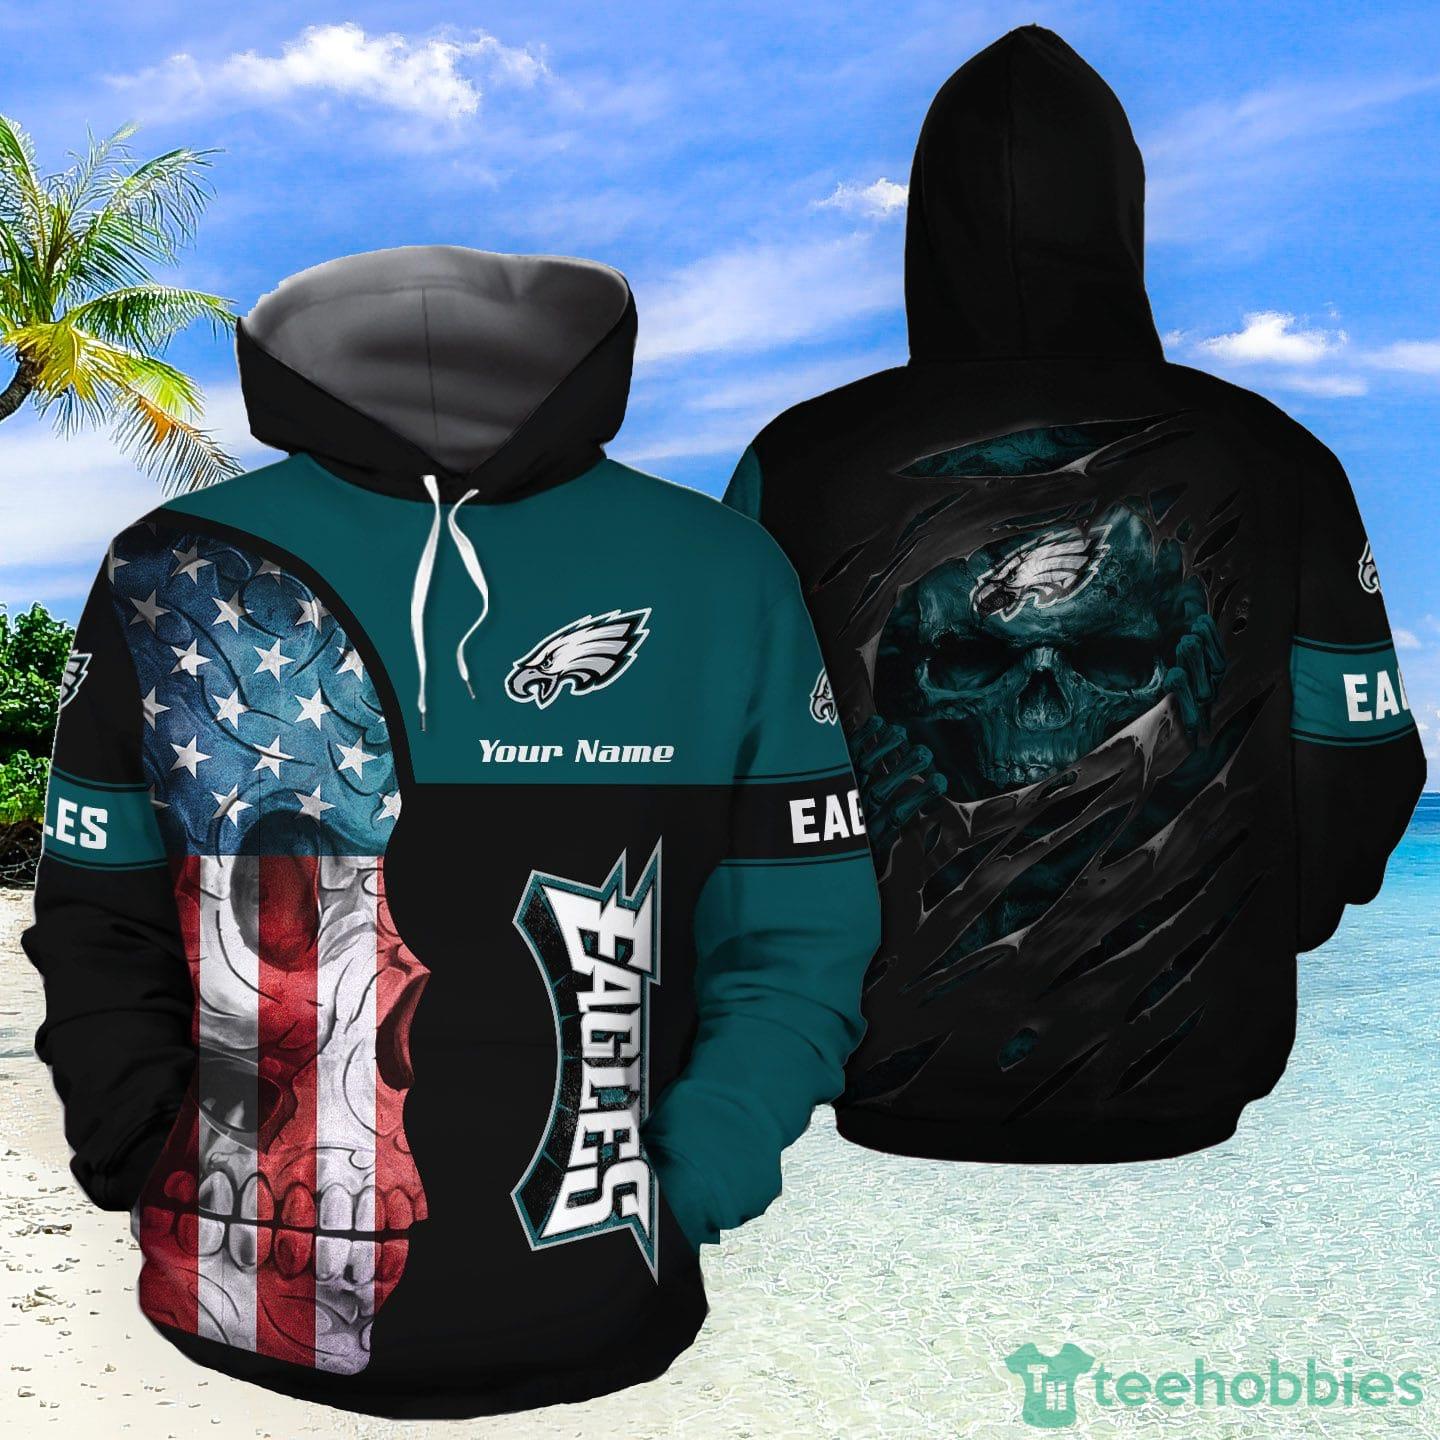 Philadelphia Eagles Custom Number And Name NFL 3D Baseball Jersey Shirt  Skull For Fans Gift Halloween - Freedomdesign